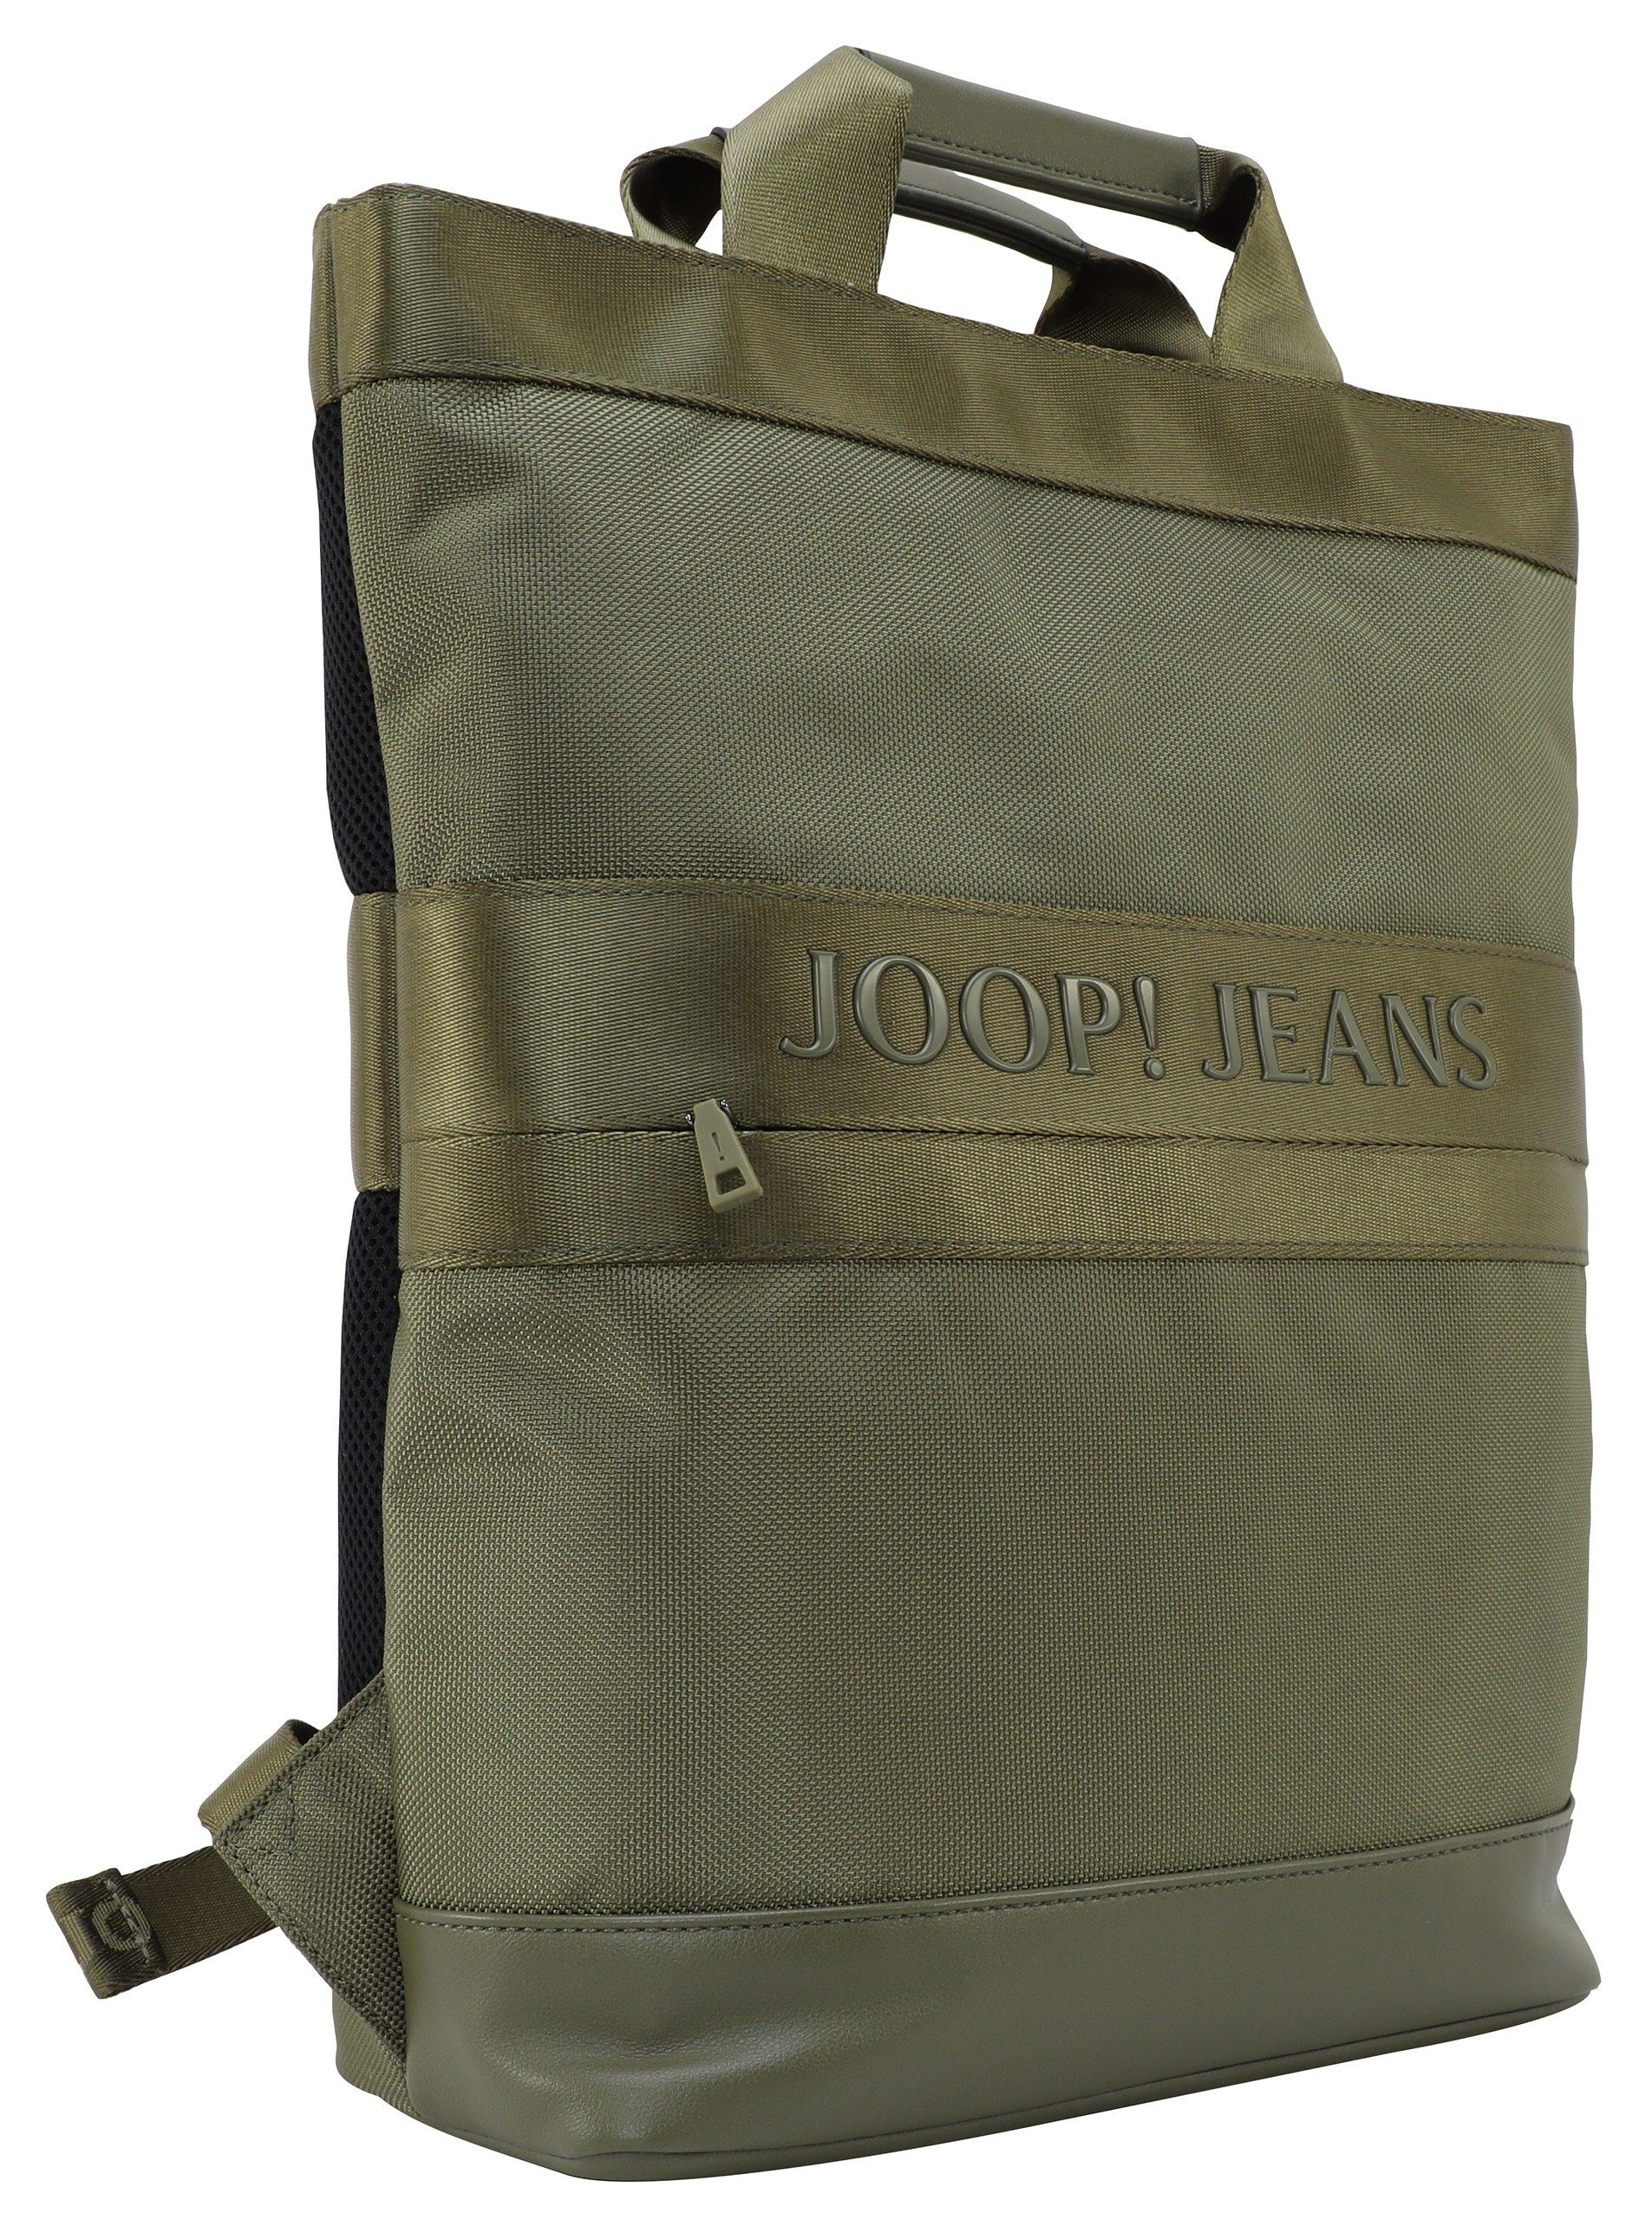 Jeans modica Cityrucksack forest svz, night Joop mit Reißverschluss-Vortasche falk backpack